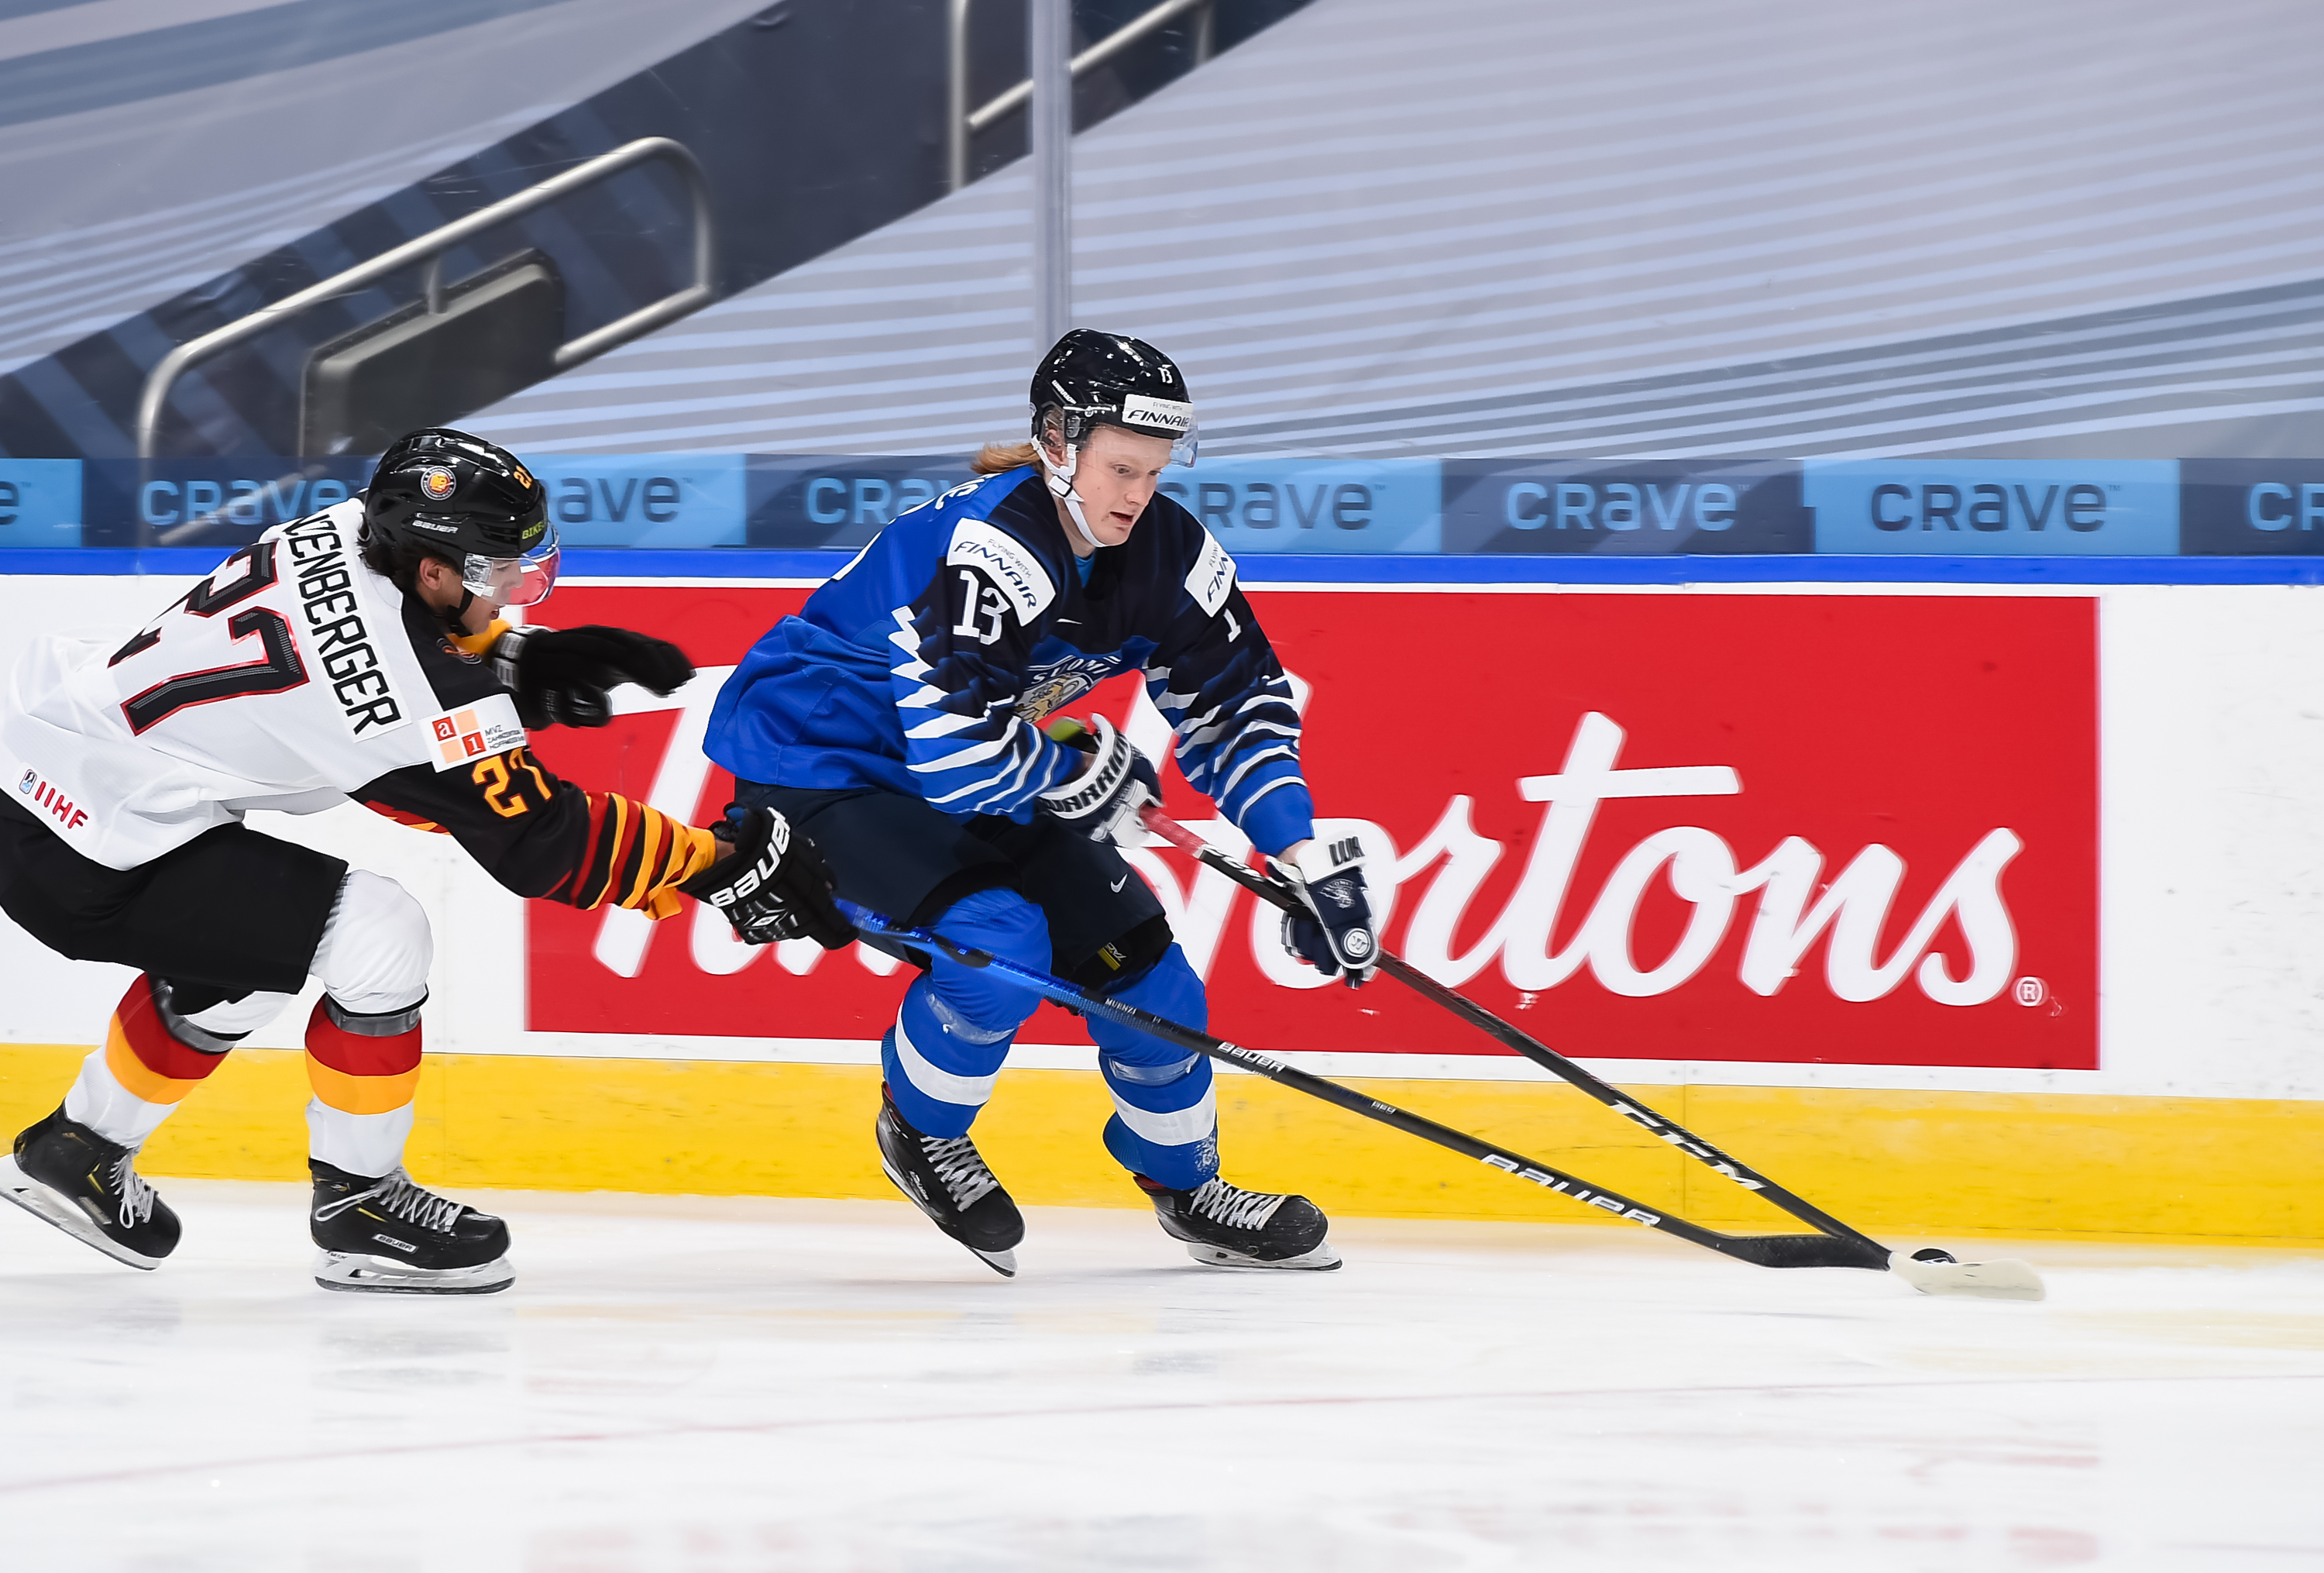 IIHF - Lucas, Lucas, Lucas! Sweden wins gold